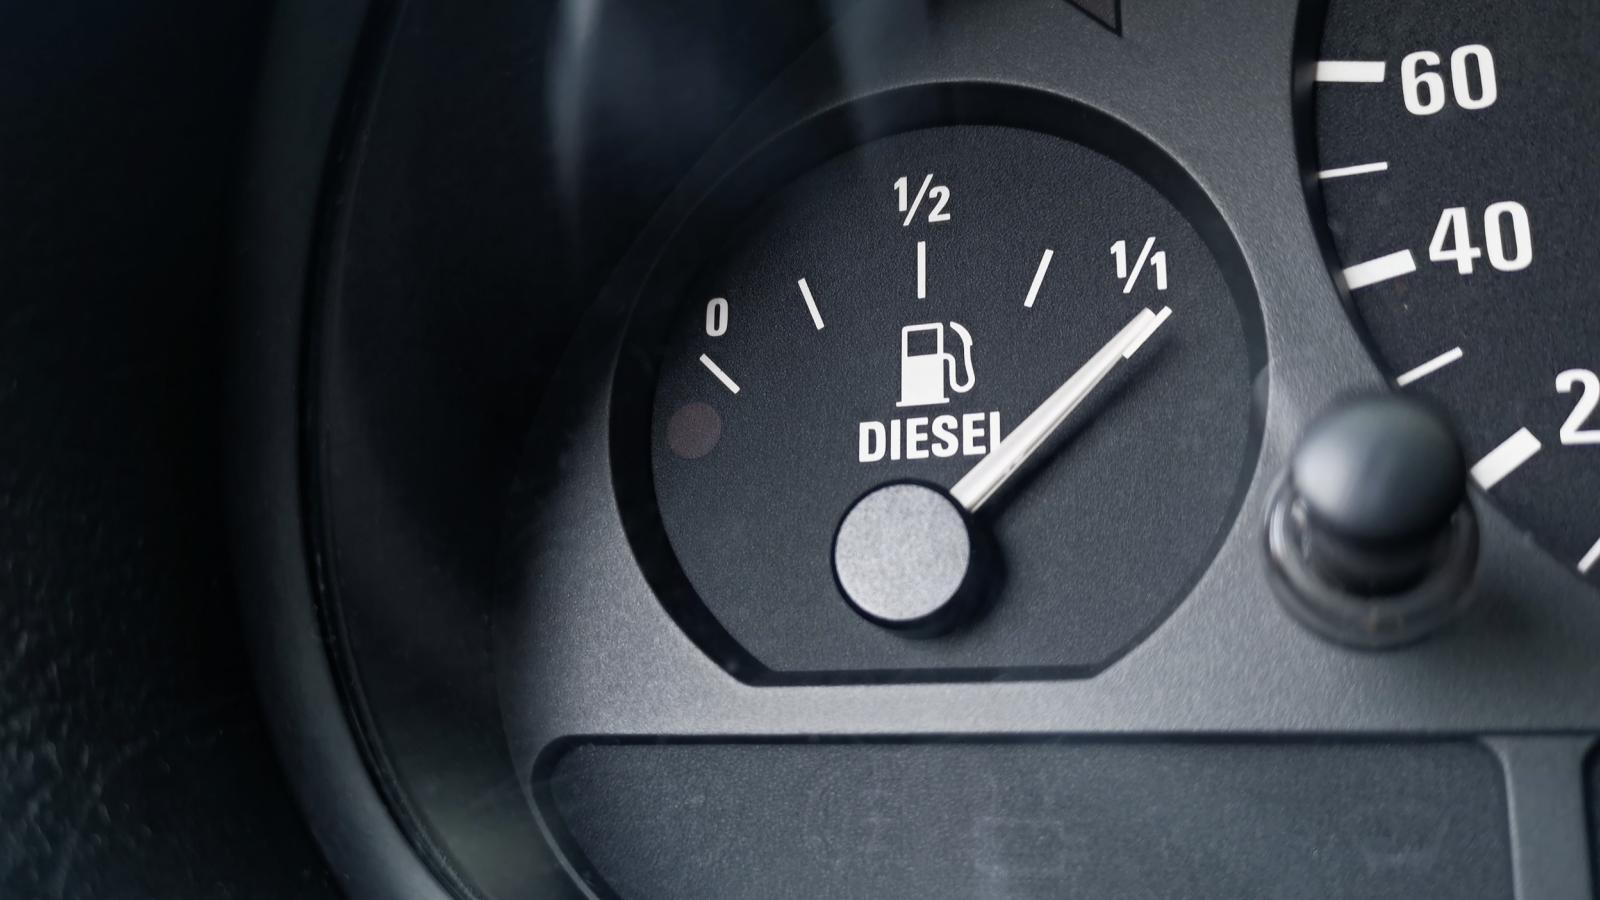 πώς με μία κίνηση μπορείς να μειώσεις στο μισό την κατανάλωση βενζίνης -το άγνωστο τρικ